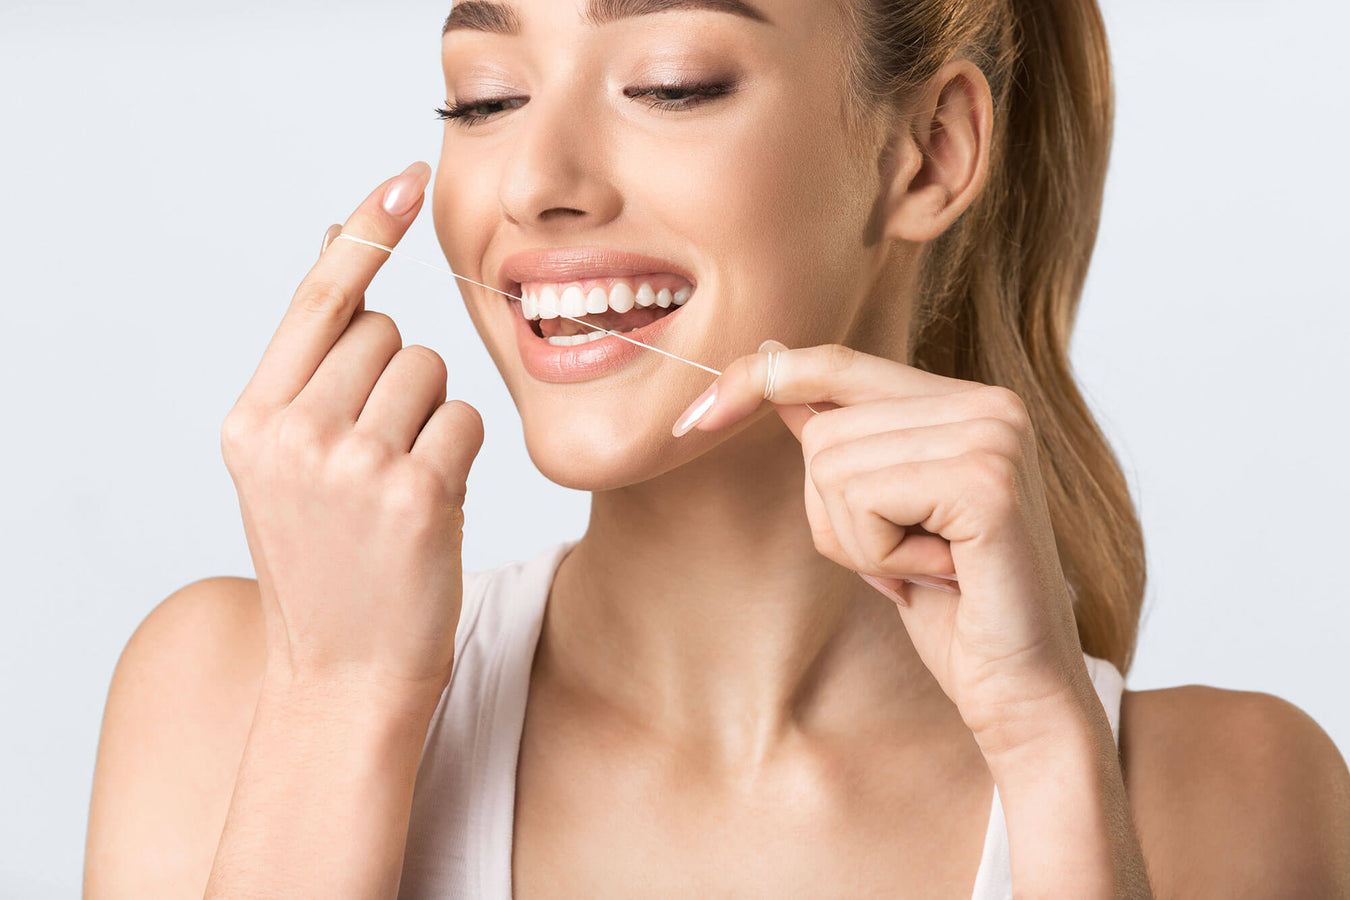 Martina Dental - Preventative dental care - flossing 